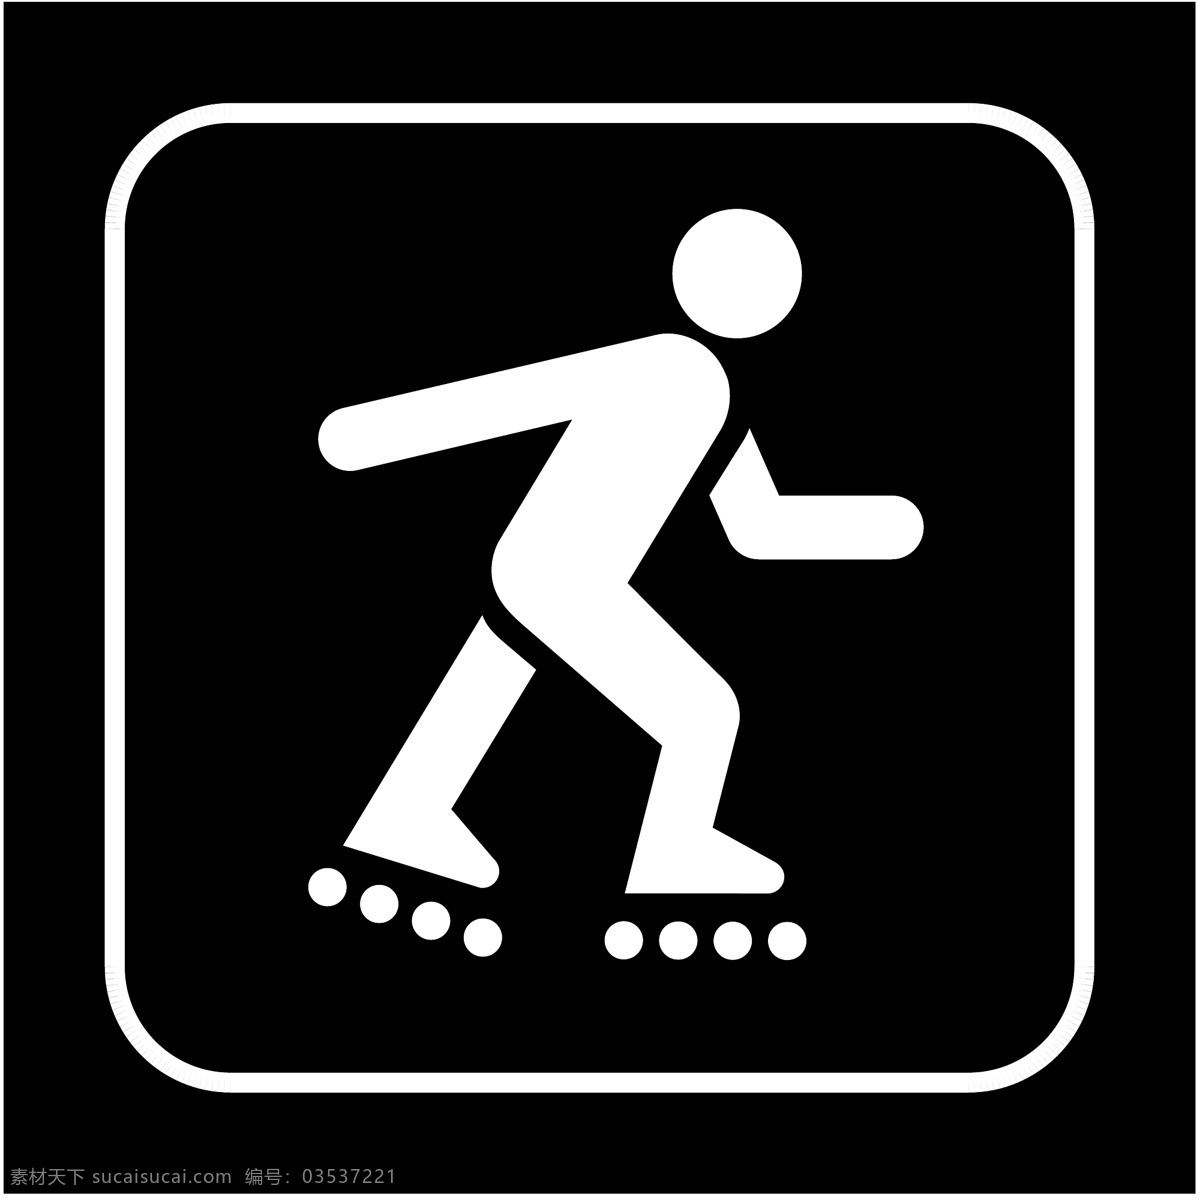 标识 标志 图标 标图 溜冰场 提示 电视台标志 小标志 企业 logo 标识标志图标 矢量